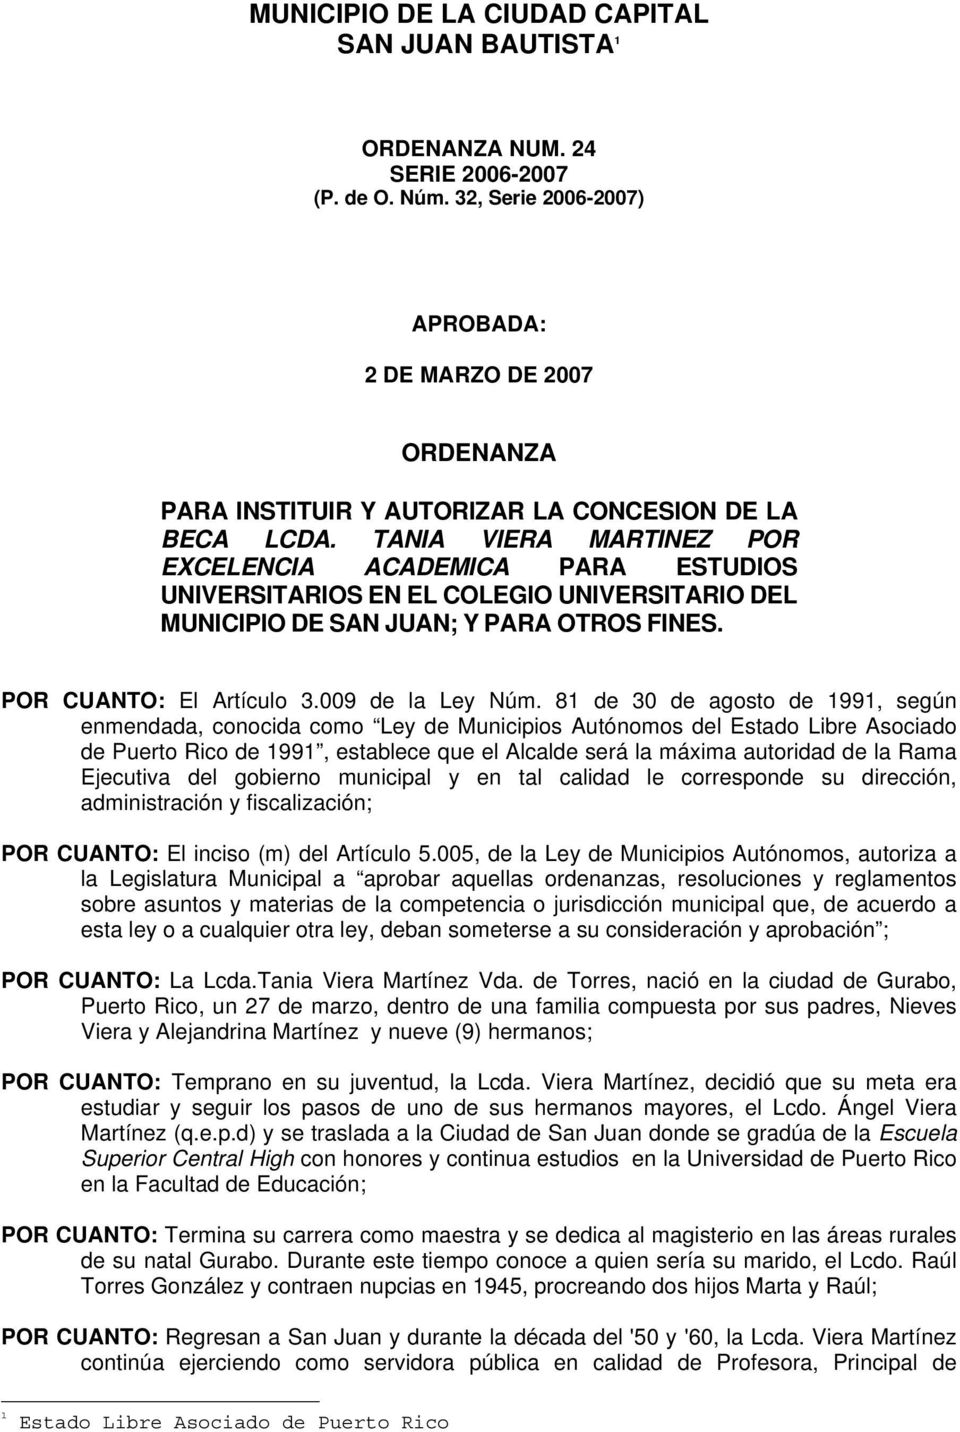 TANIA VIERA MARTINEZ POR EXCELENCIA ACADEMICA PARA ESTUDIOS UNIVERSITARIOS EN EL COLEGIO UNIVERSITARIO DEL MUNICIPIO DE SAN JUAN; Y PARA OTROS FINES. POR CUANTO: El Artículo 3.009 de la Ley Núm.